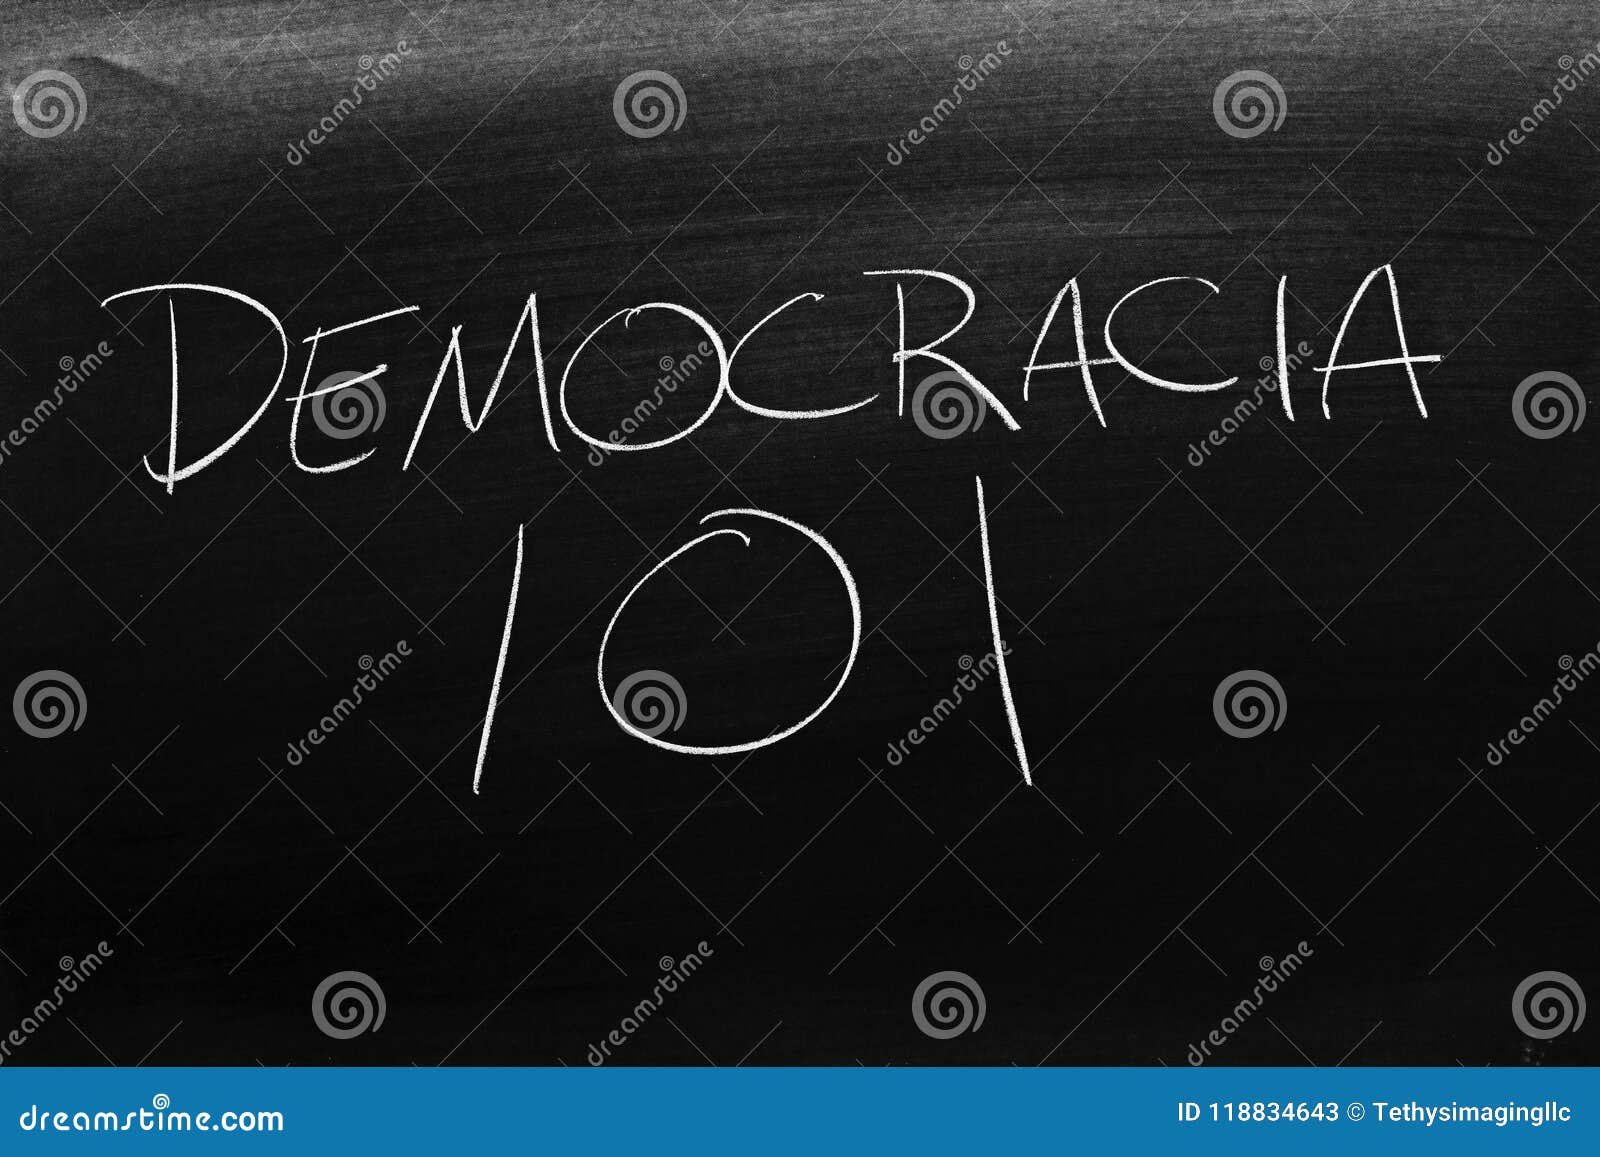 democracia 101 on a blackboard. translation: democracy 101